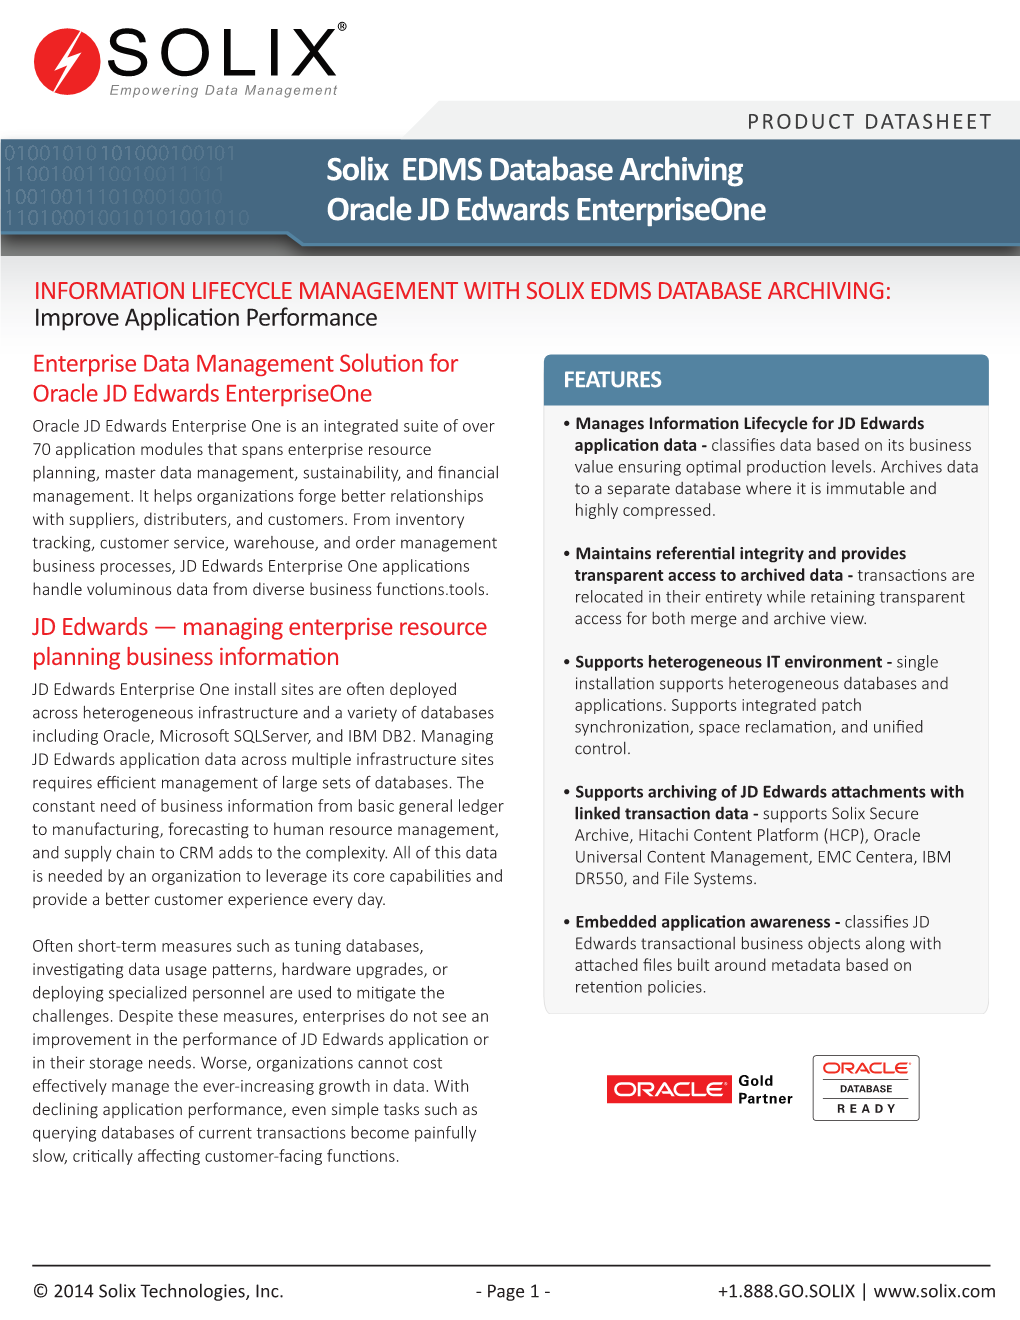 Enterprise Data Management Solution for Oracle JD Edwards Enterpriseone